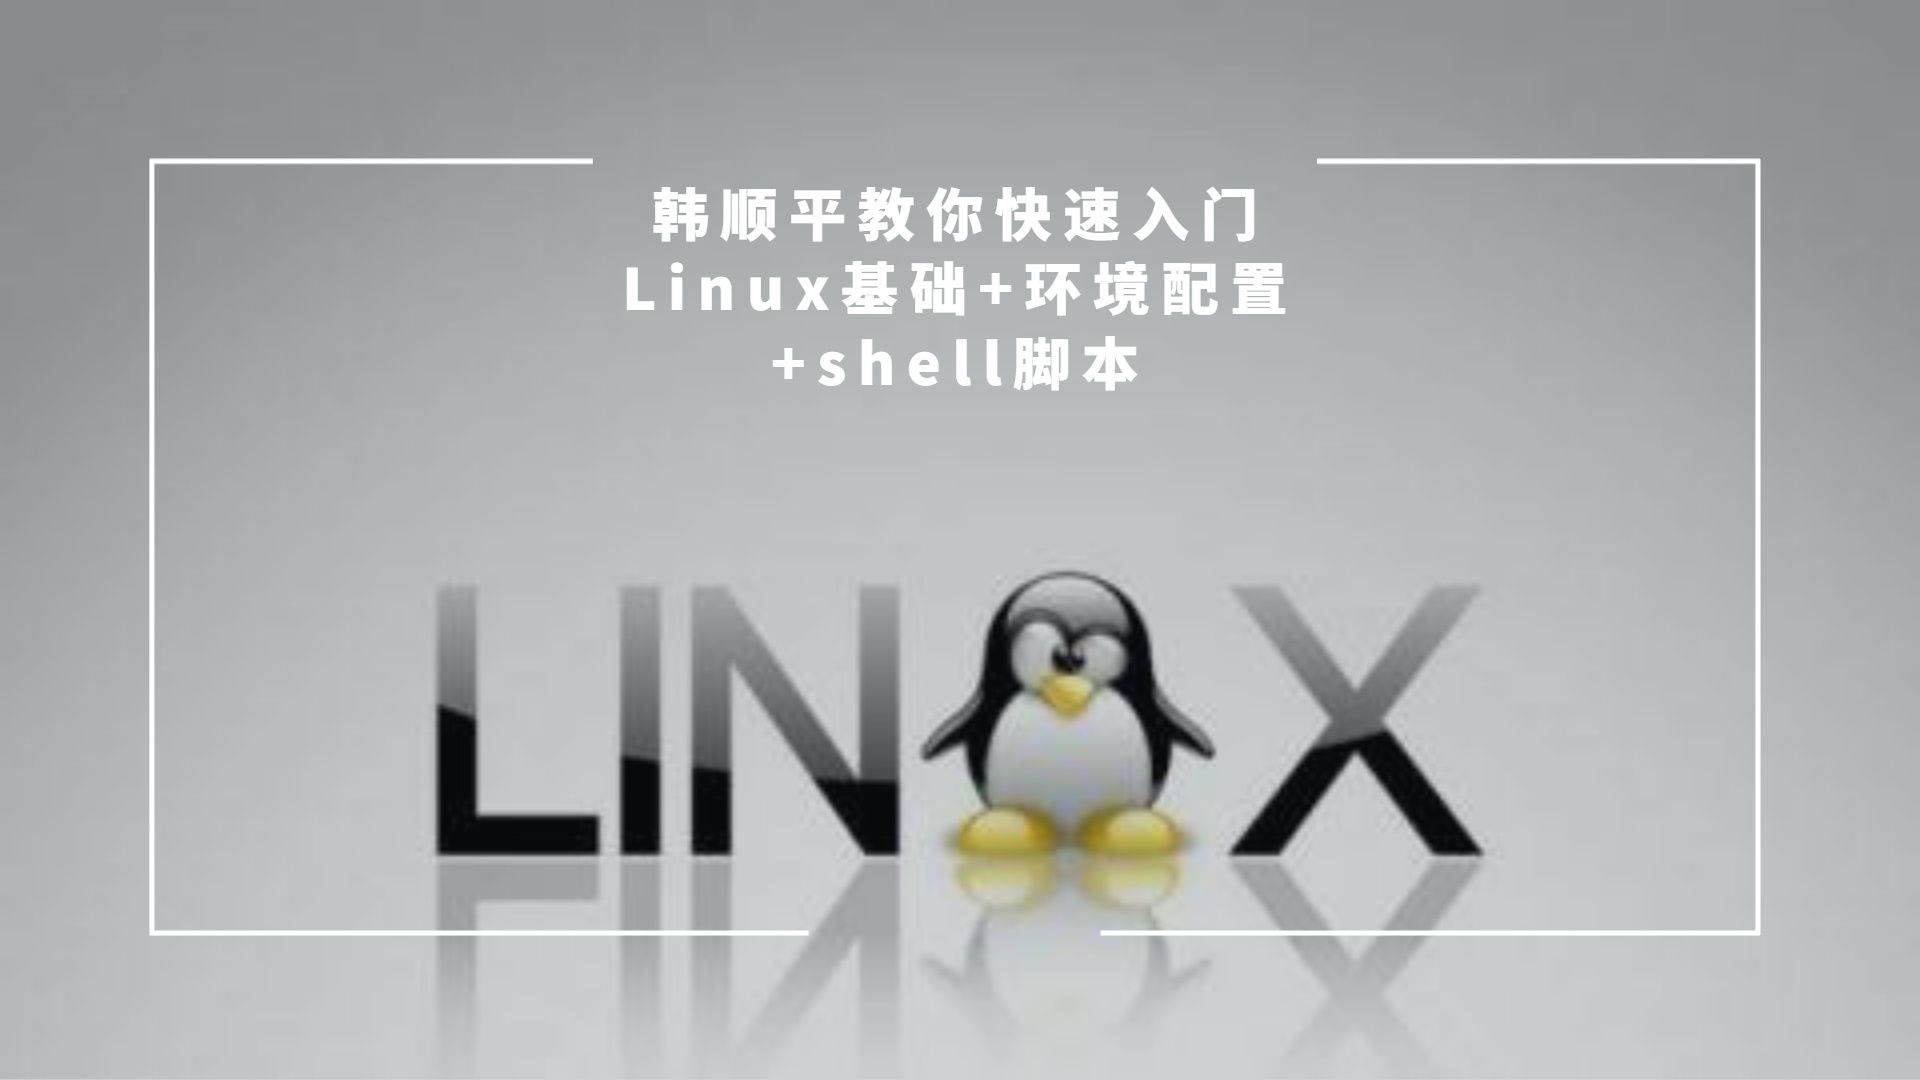 韩顺平教你快速入门Linux基础+环境配置+shell脚本